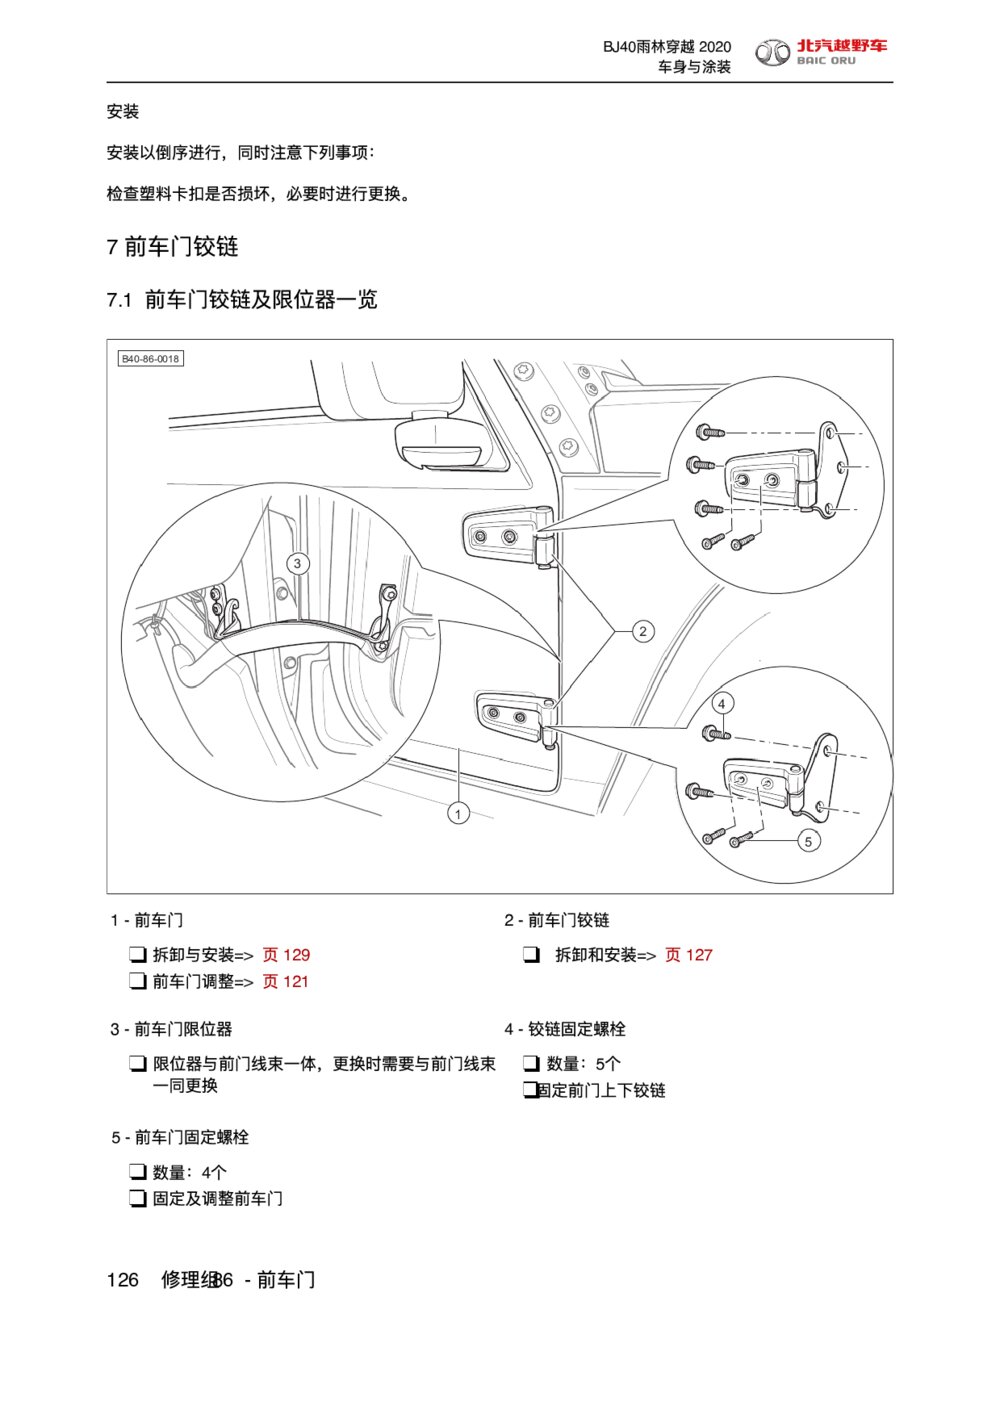 2020款北京BJ40前车门铰链拆装手册